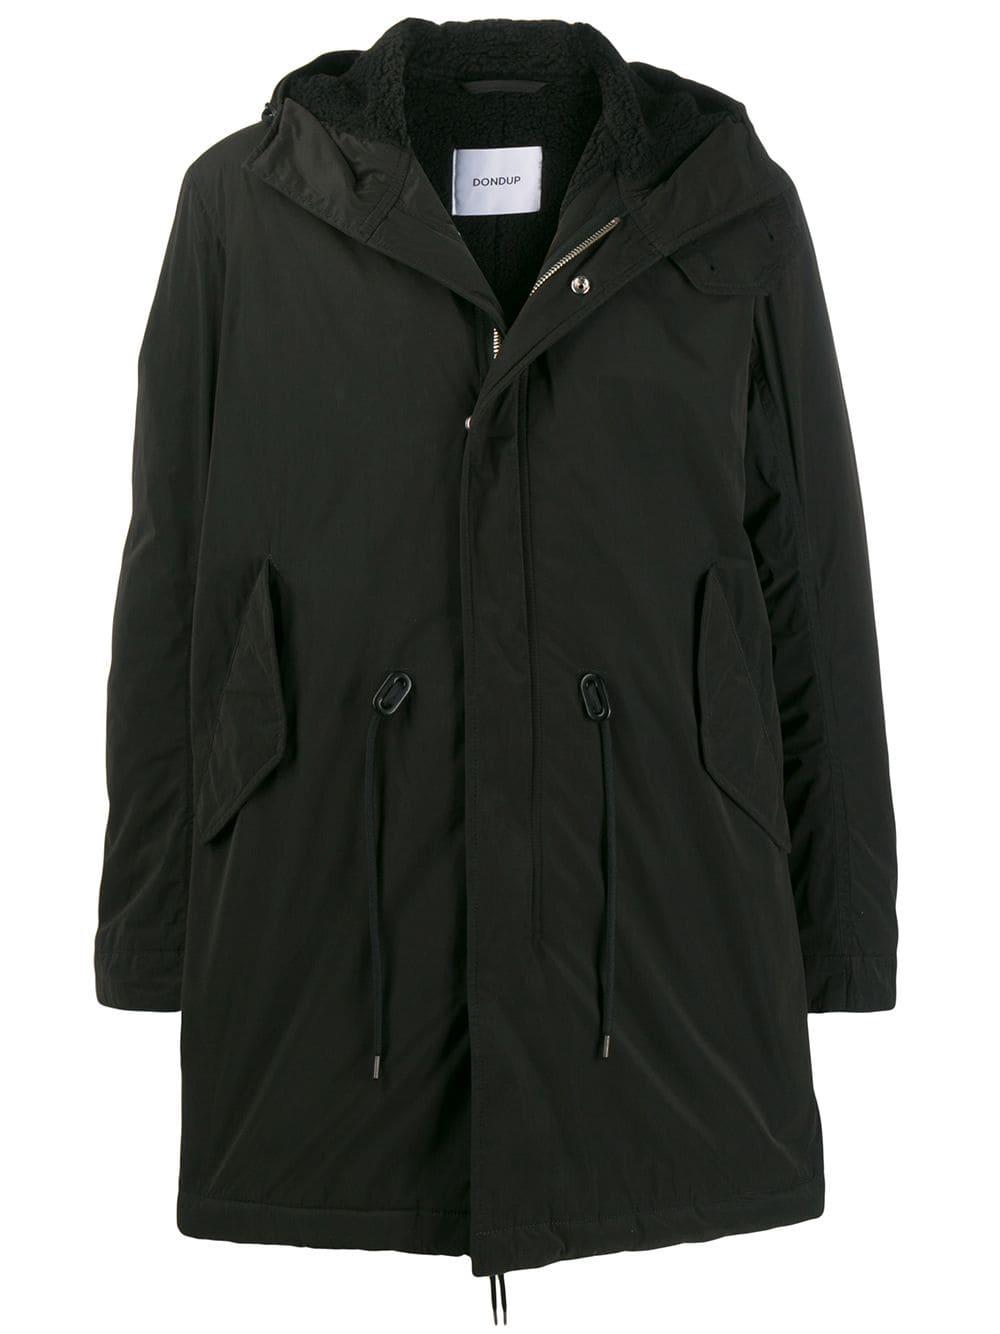 Dondup Hooded Parka Coat in Black for Men - Lyst